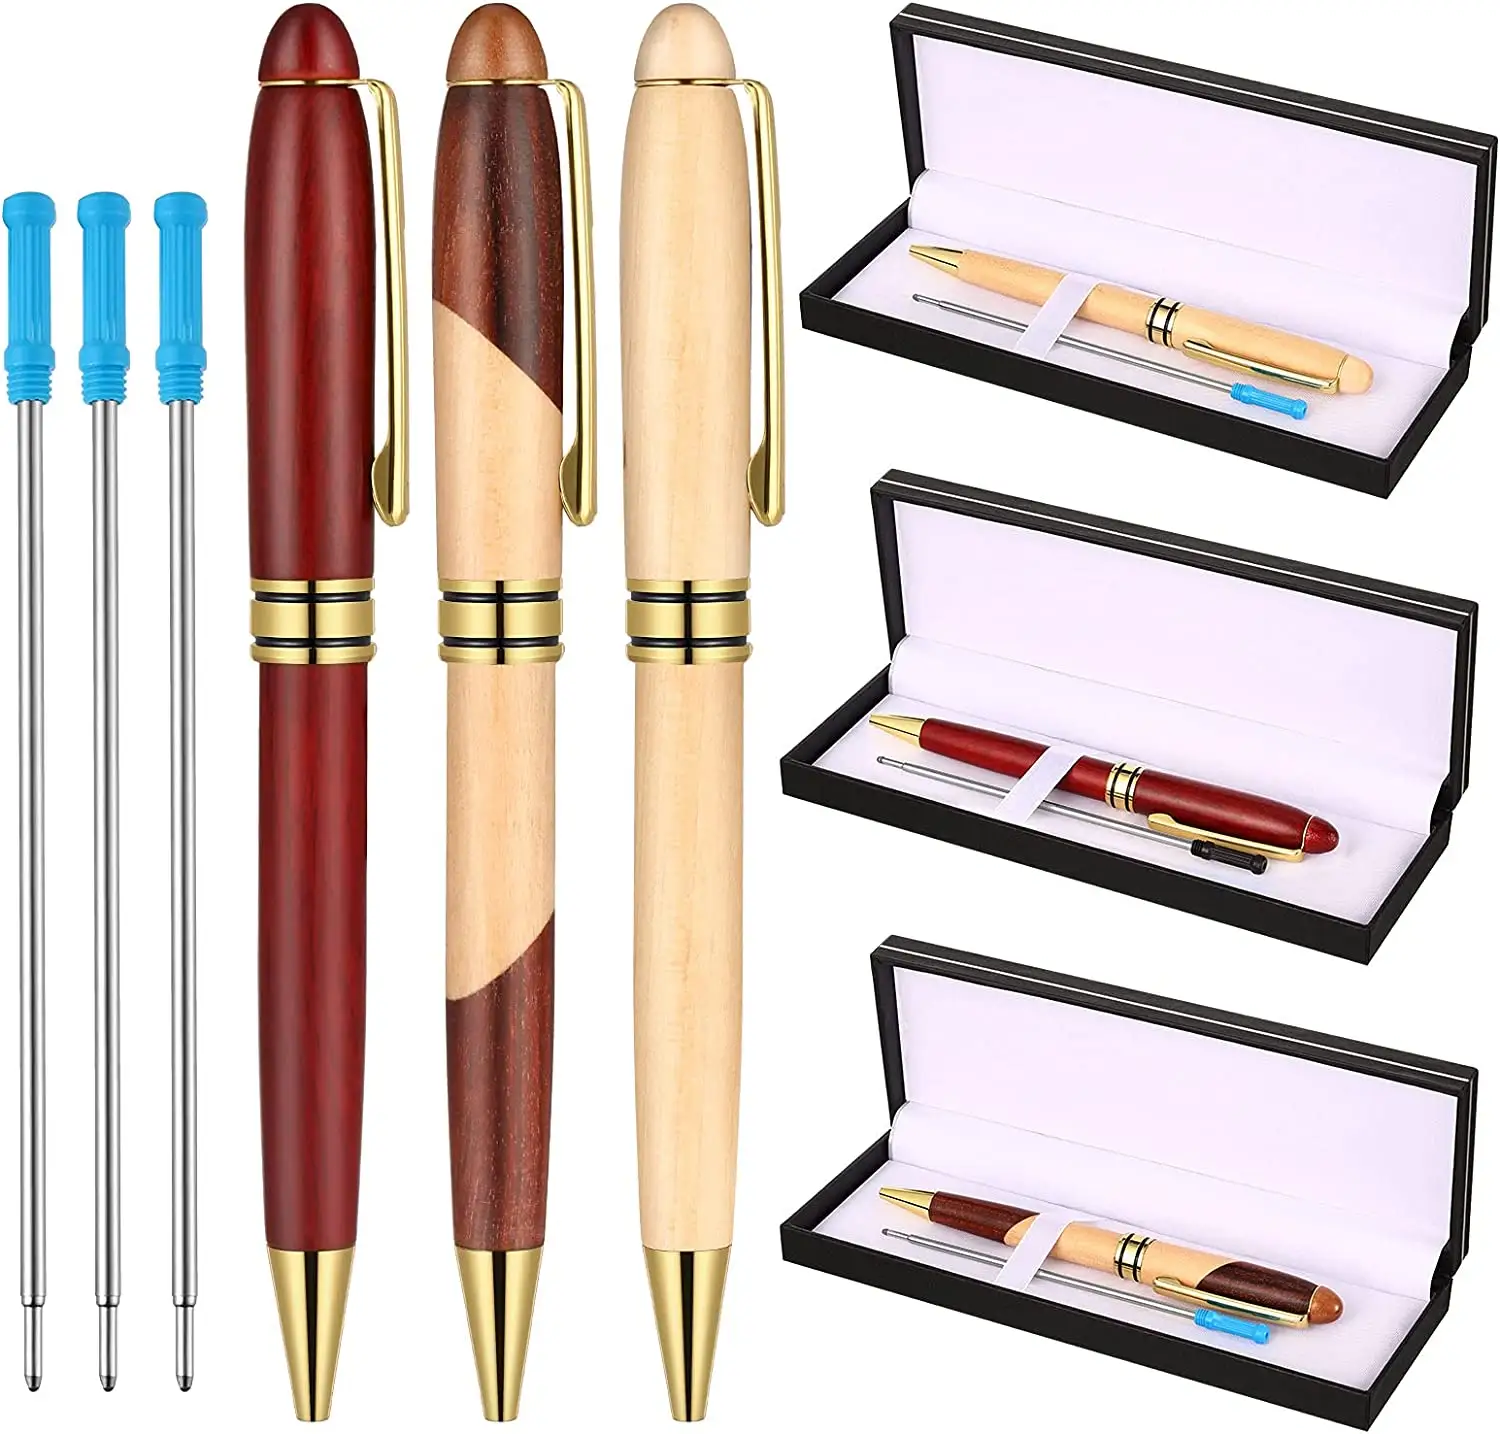 Hoge Kwaliteit Handgemaakte Houten Pen, Houtgestookte Pen Met Hout Bamboe Pen Case